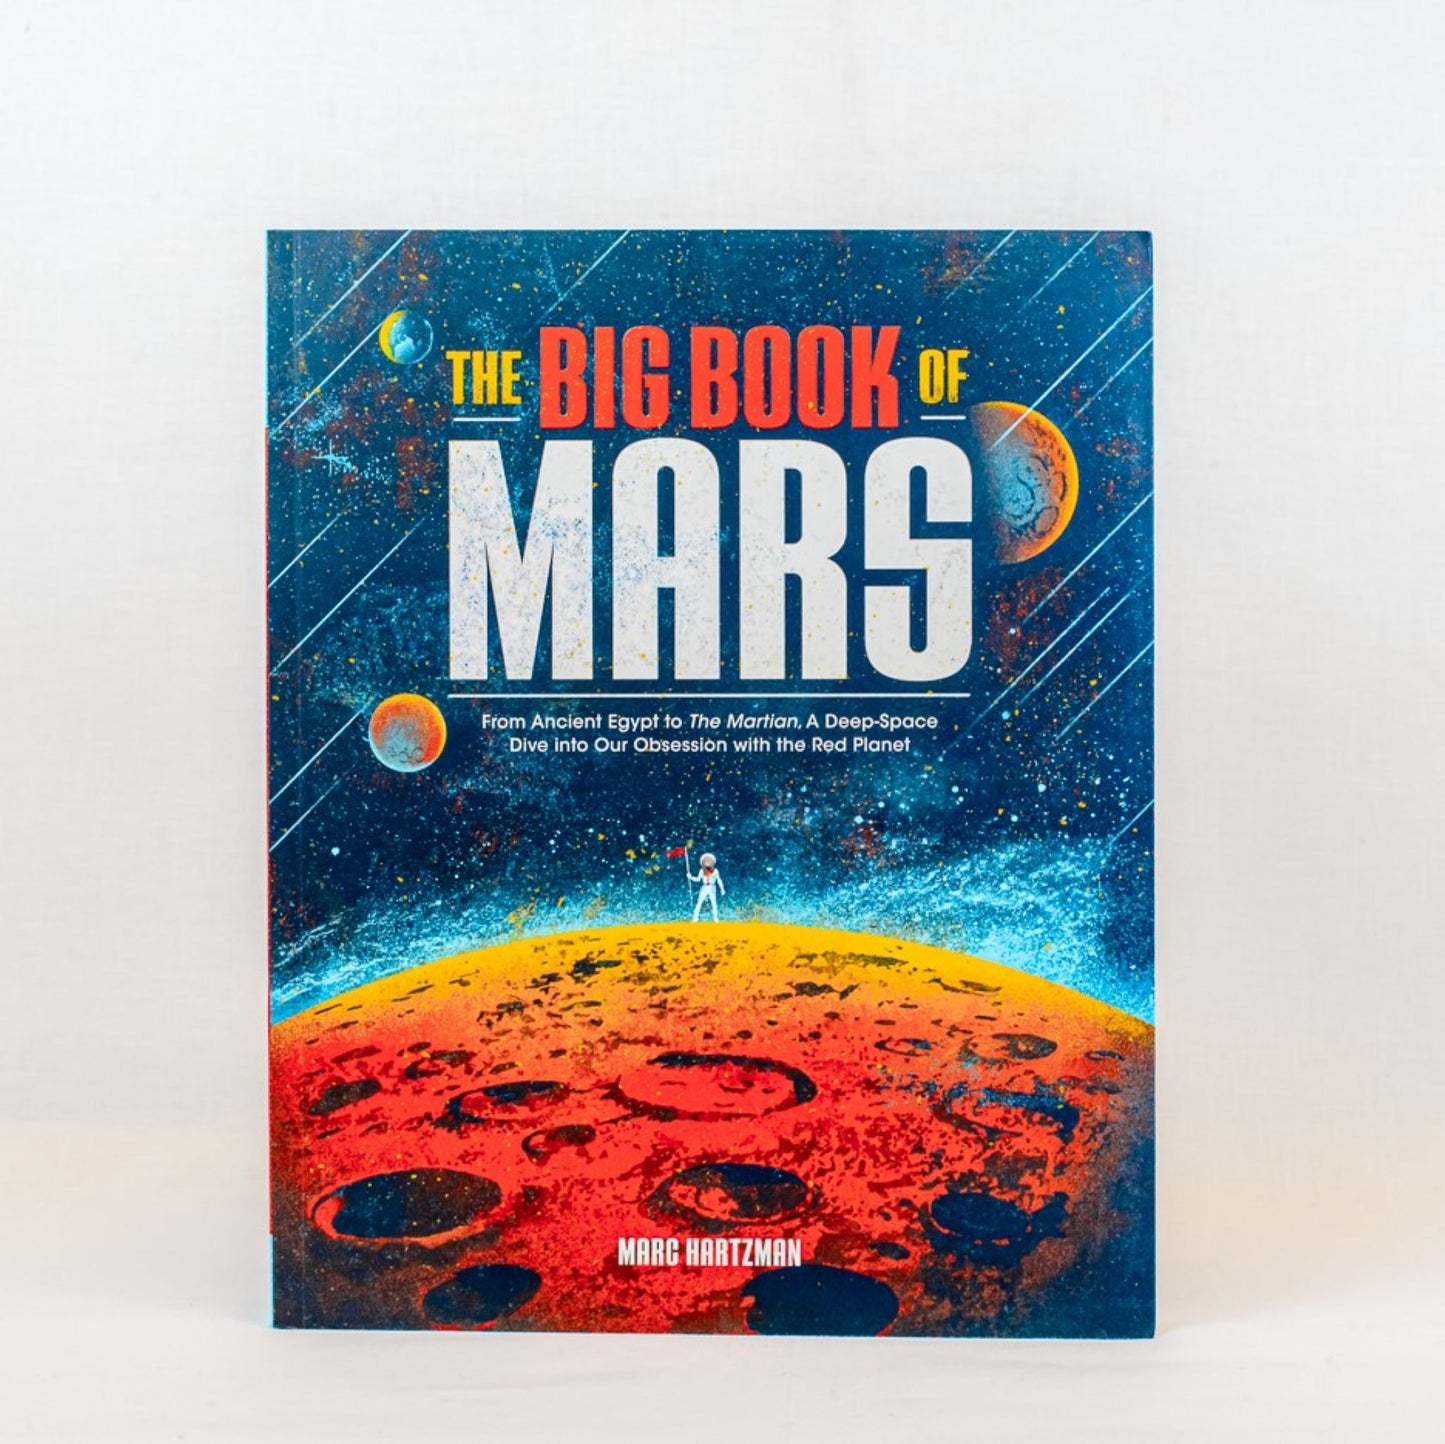 The Big Book of Mars, Marc Hartzman